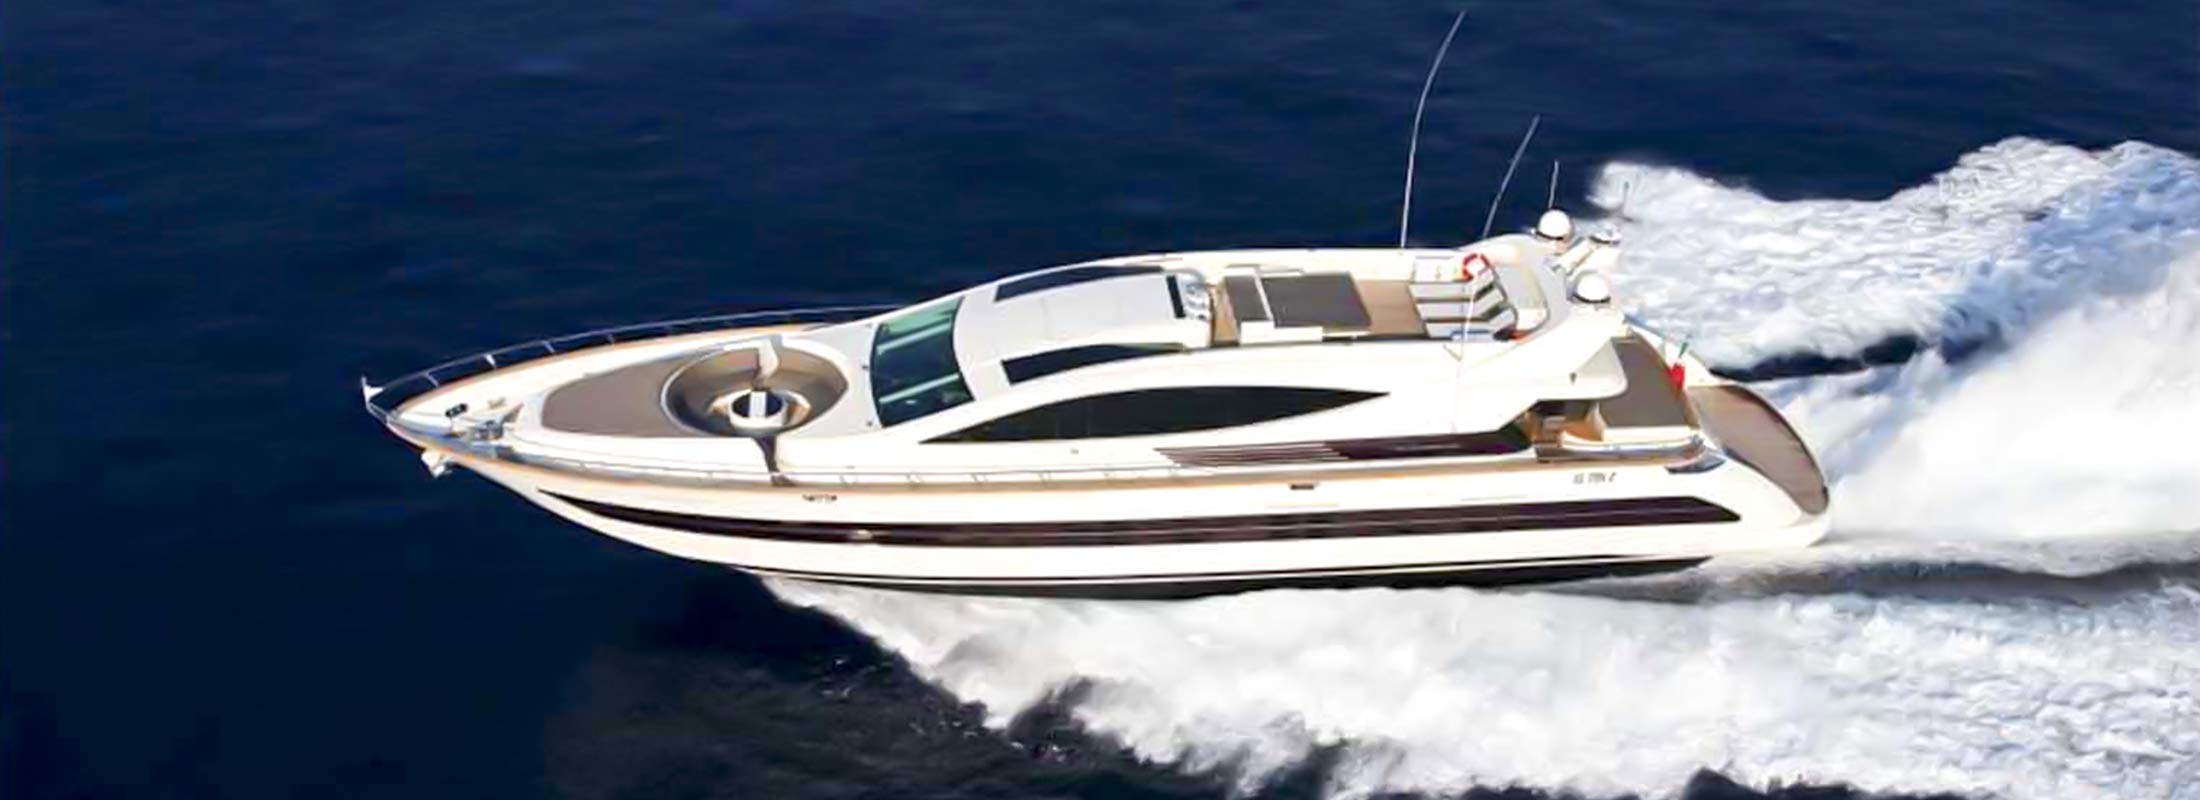 Toby Motor Yacht for Charter Mediterranean slider 2